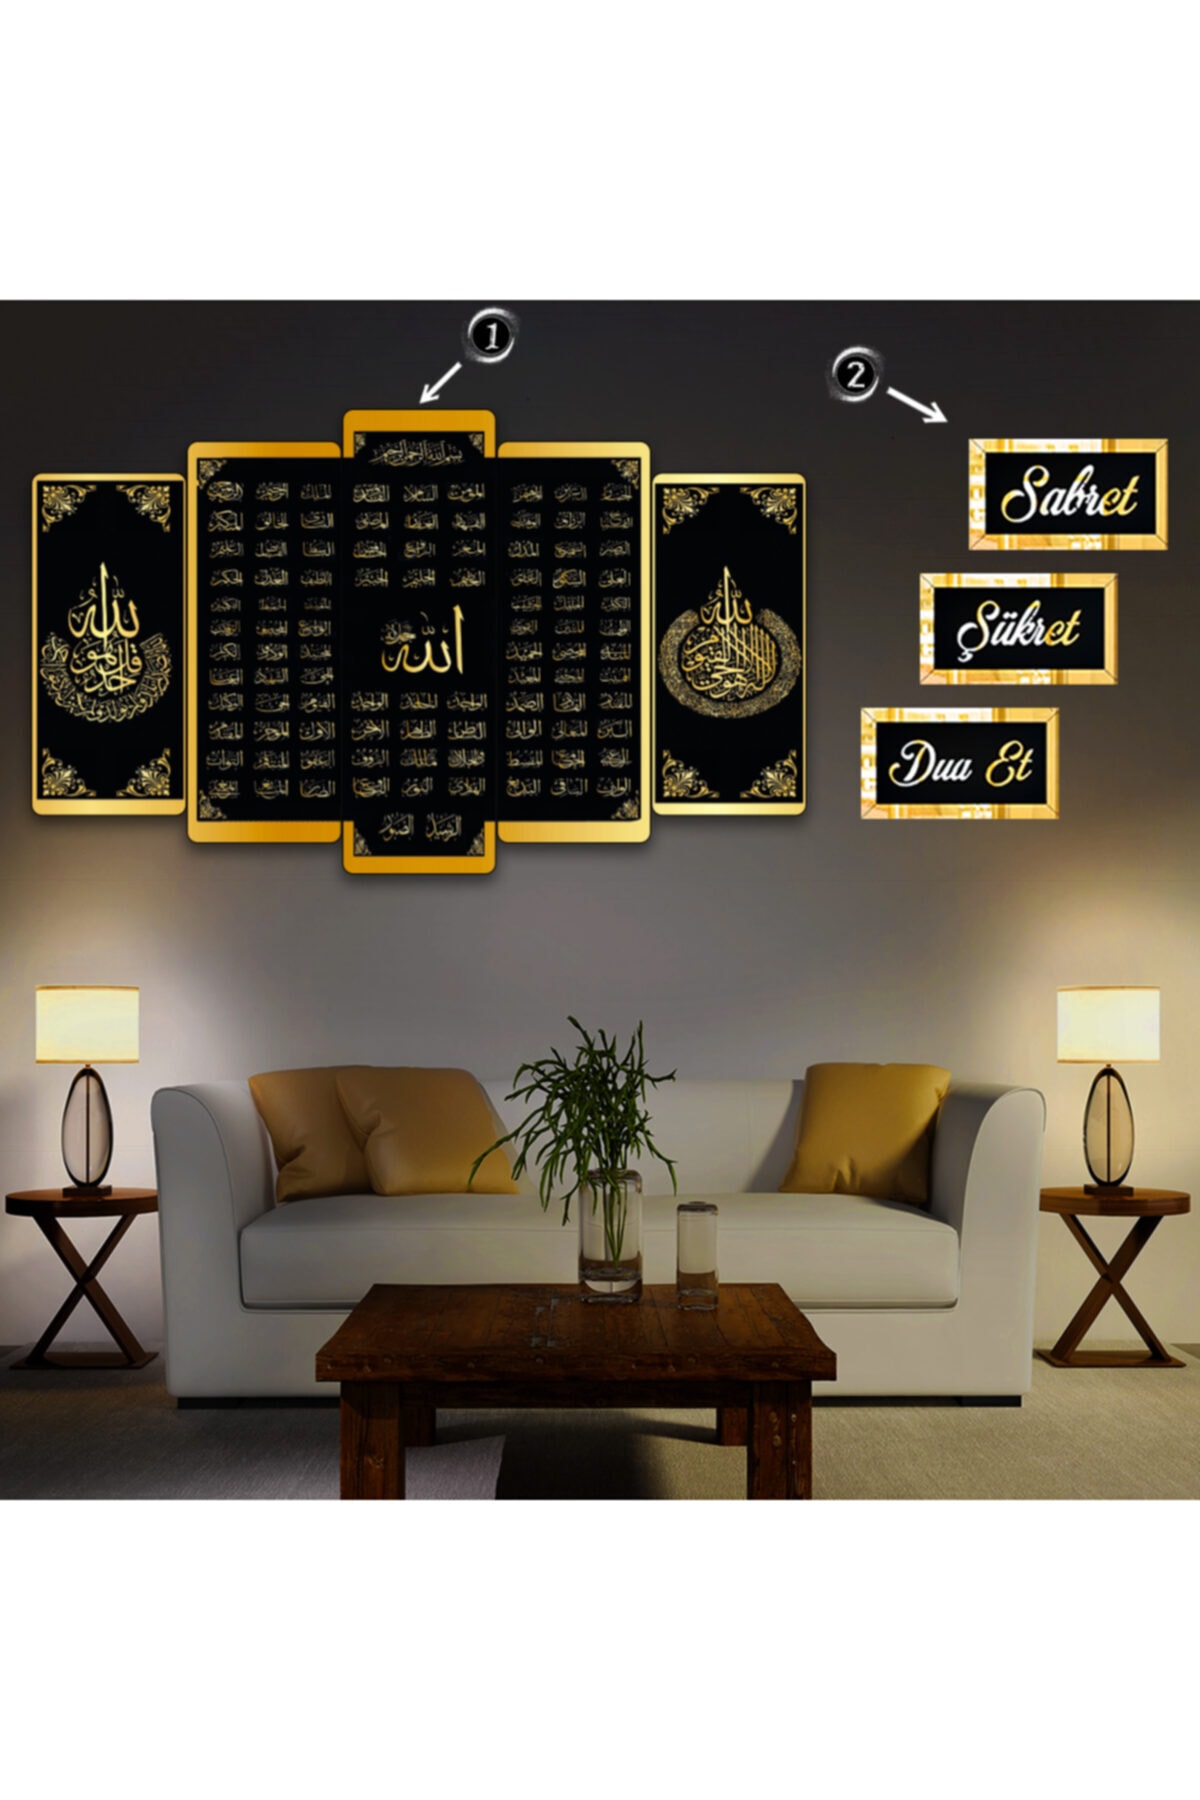 Zevahir Mobilya Dekorasyon Zevahir Mdf Esmaül Hüsna Allahın 99 Ismi Dini Tablo + Aynalı Gold Pleksi Sabret Şükret Dua Et